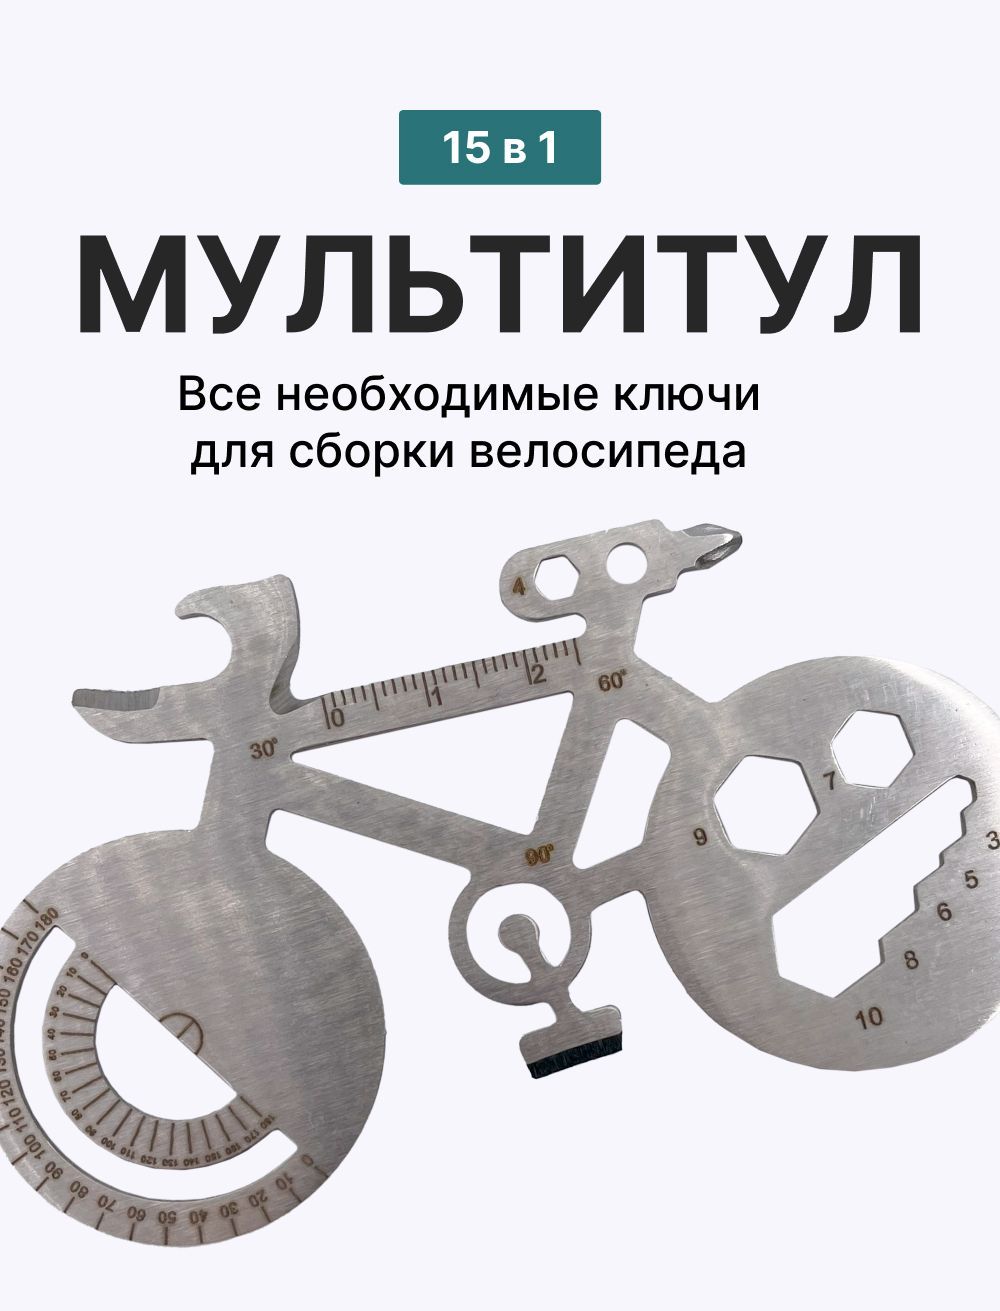 Блог - велосипедні новини, статті про велосипедні товари, велоремонту